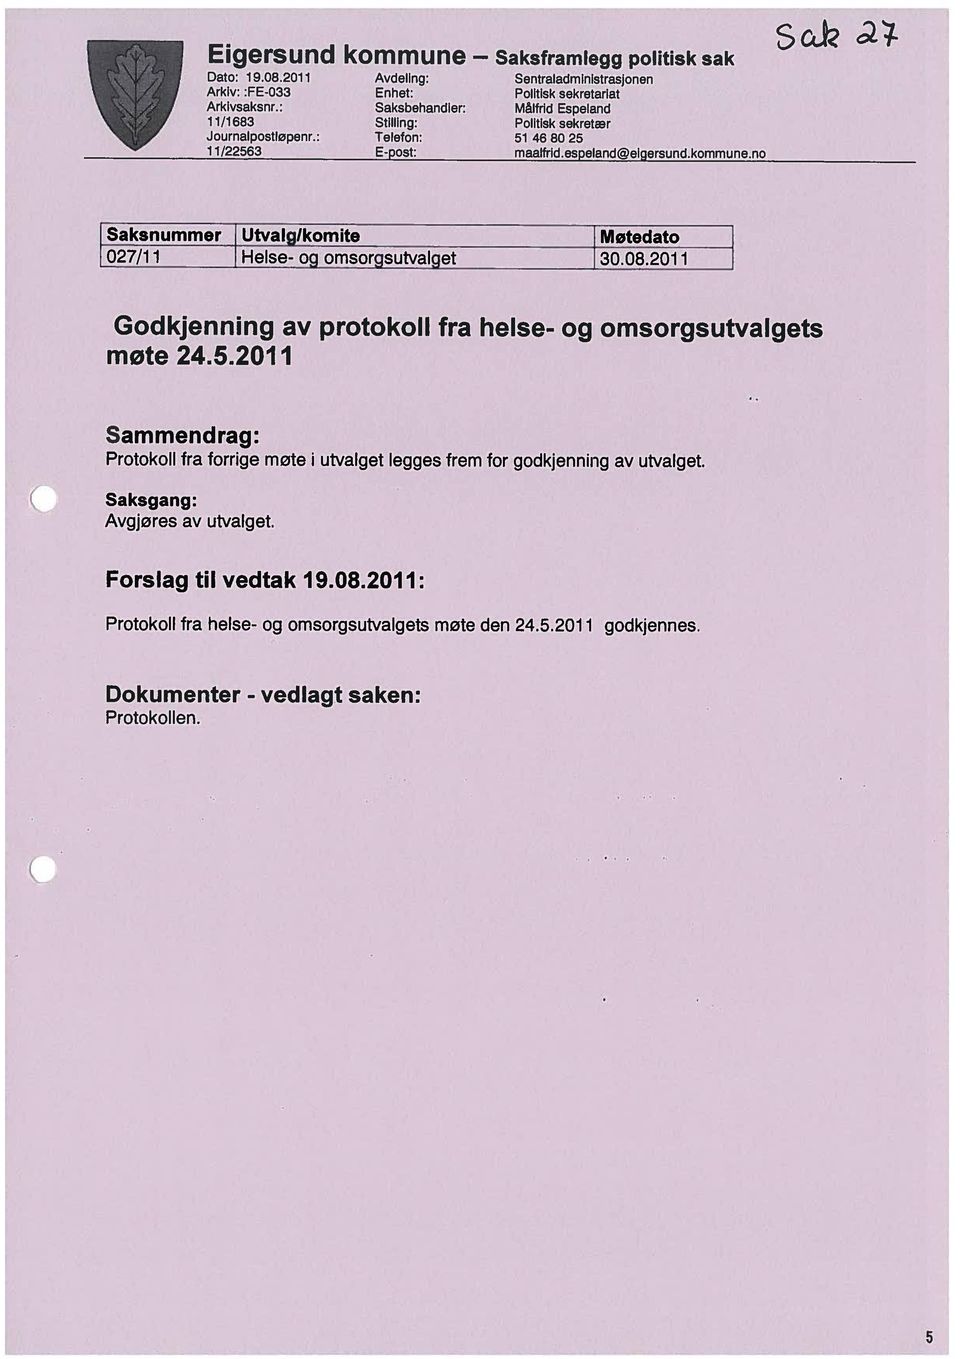 : 11/1683 Saksbehandler: Målfrid Espeland Enhet: Politisk sekretariat Sck I Forslag til vedtak 19.08.2011: Avgjøres av utvalget.